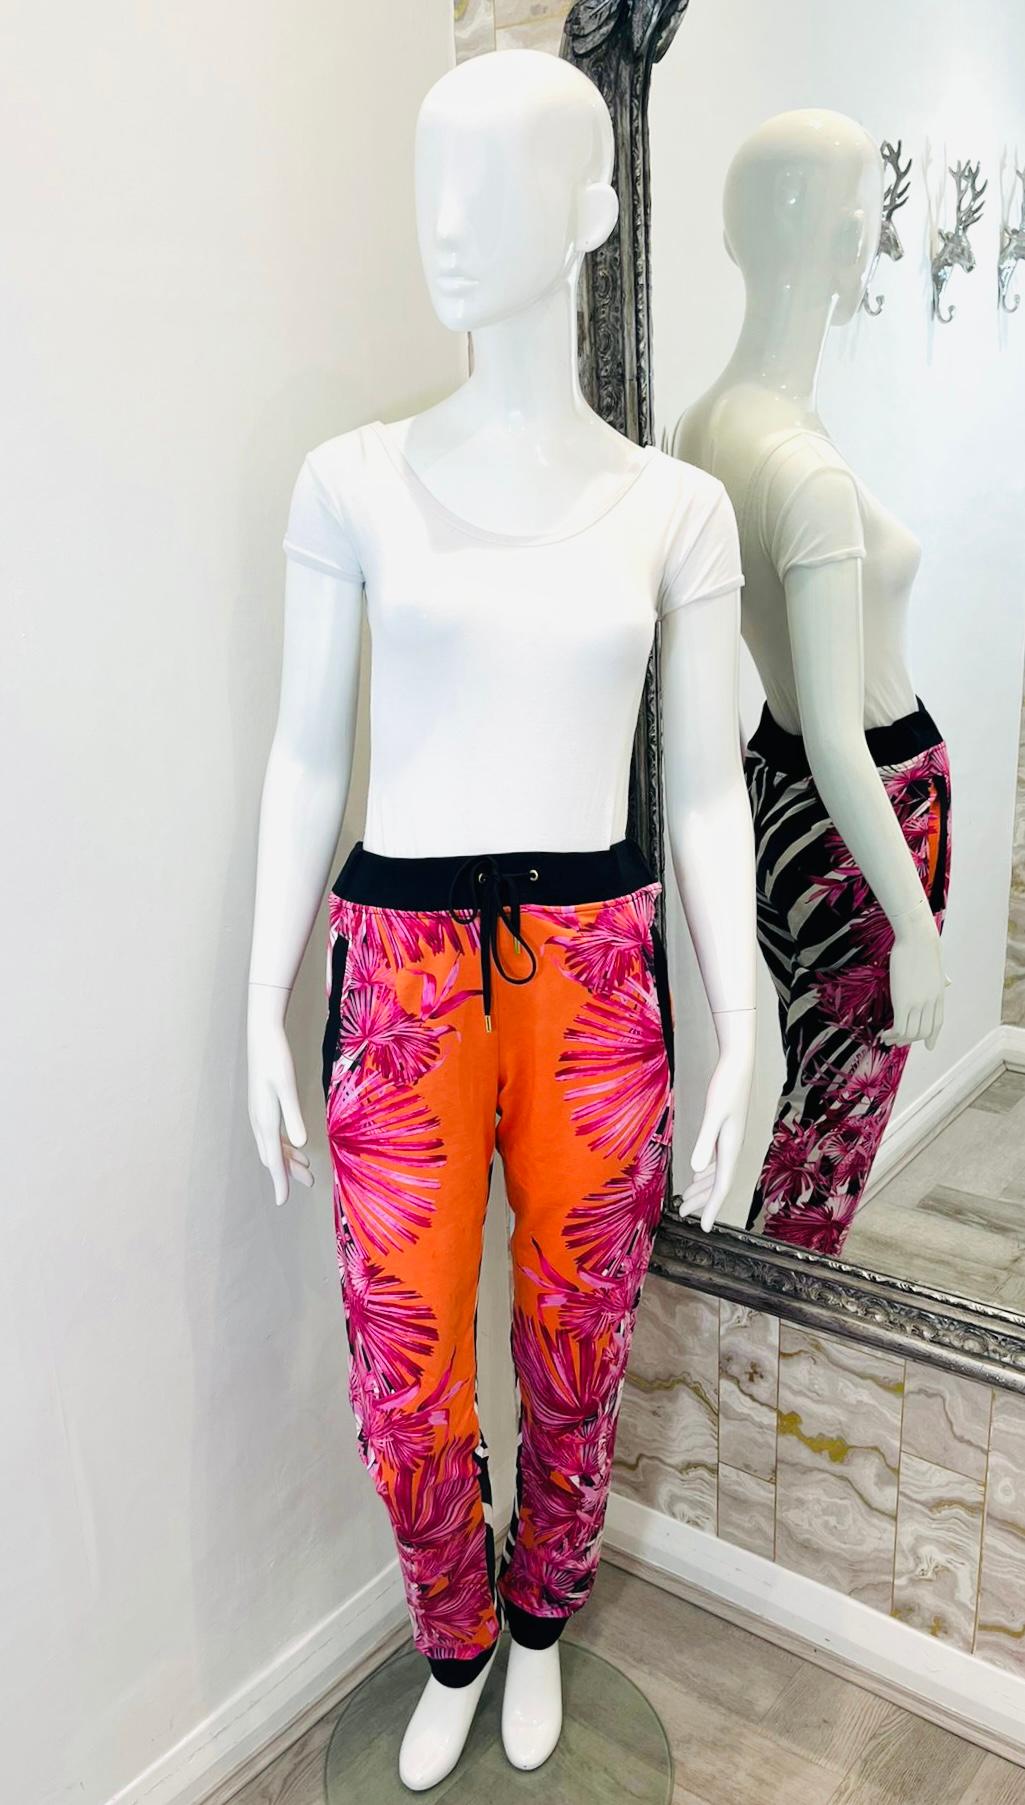 Pantalon en coton imprimé Versus Versace

Pantalon multicolore à la coupe décontractée, orné d'un imprimé floral rose sur le devant et d'un motif zébré contrastant à l'arrière.

Il est doté d'une taille élastique avec cordon de serrage, de poignets